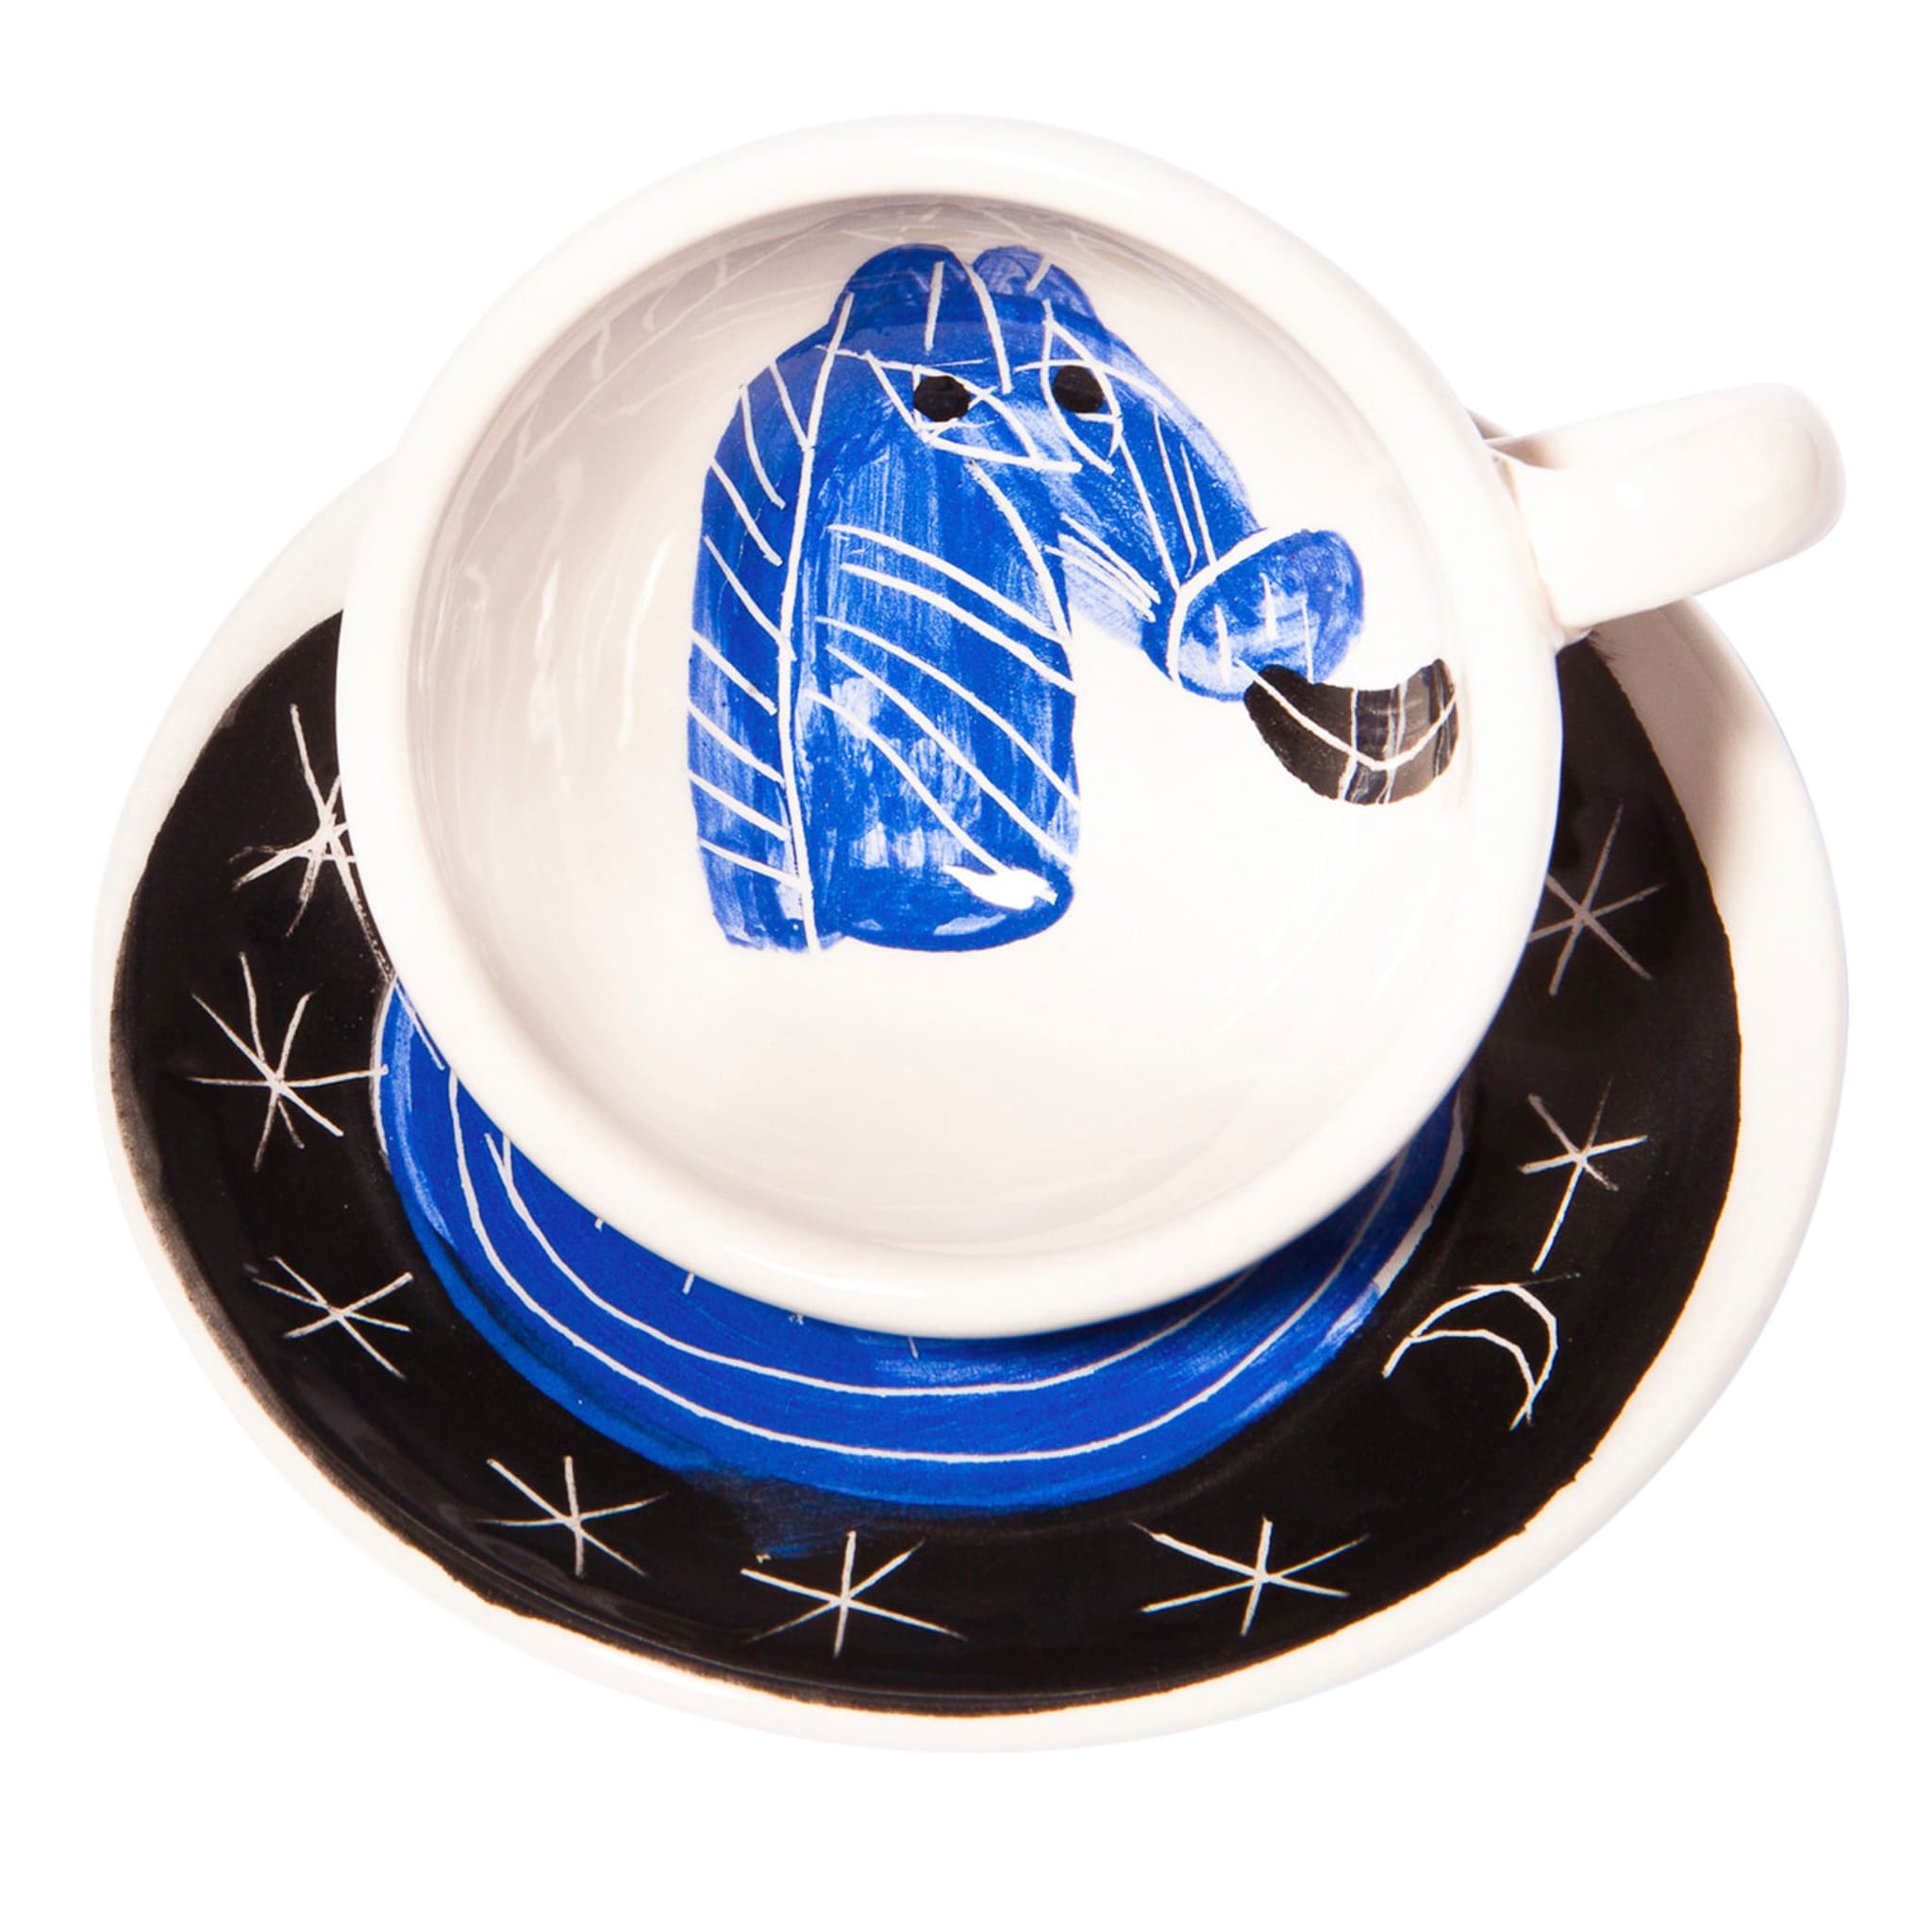 Blaues Pferd unter dem Sternenhimmel N.2 Espresso-Set - Hauptansicht